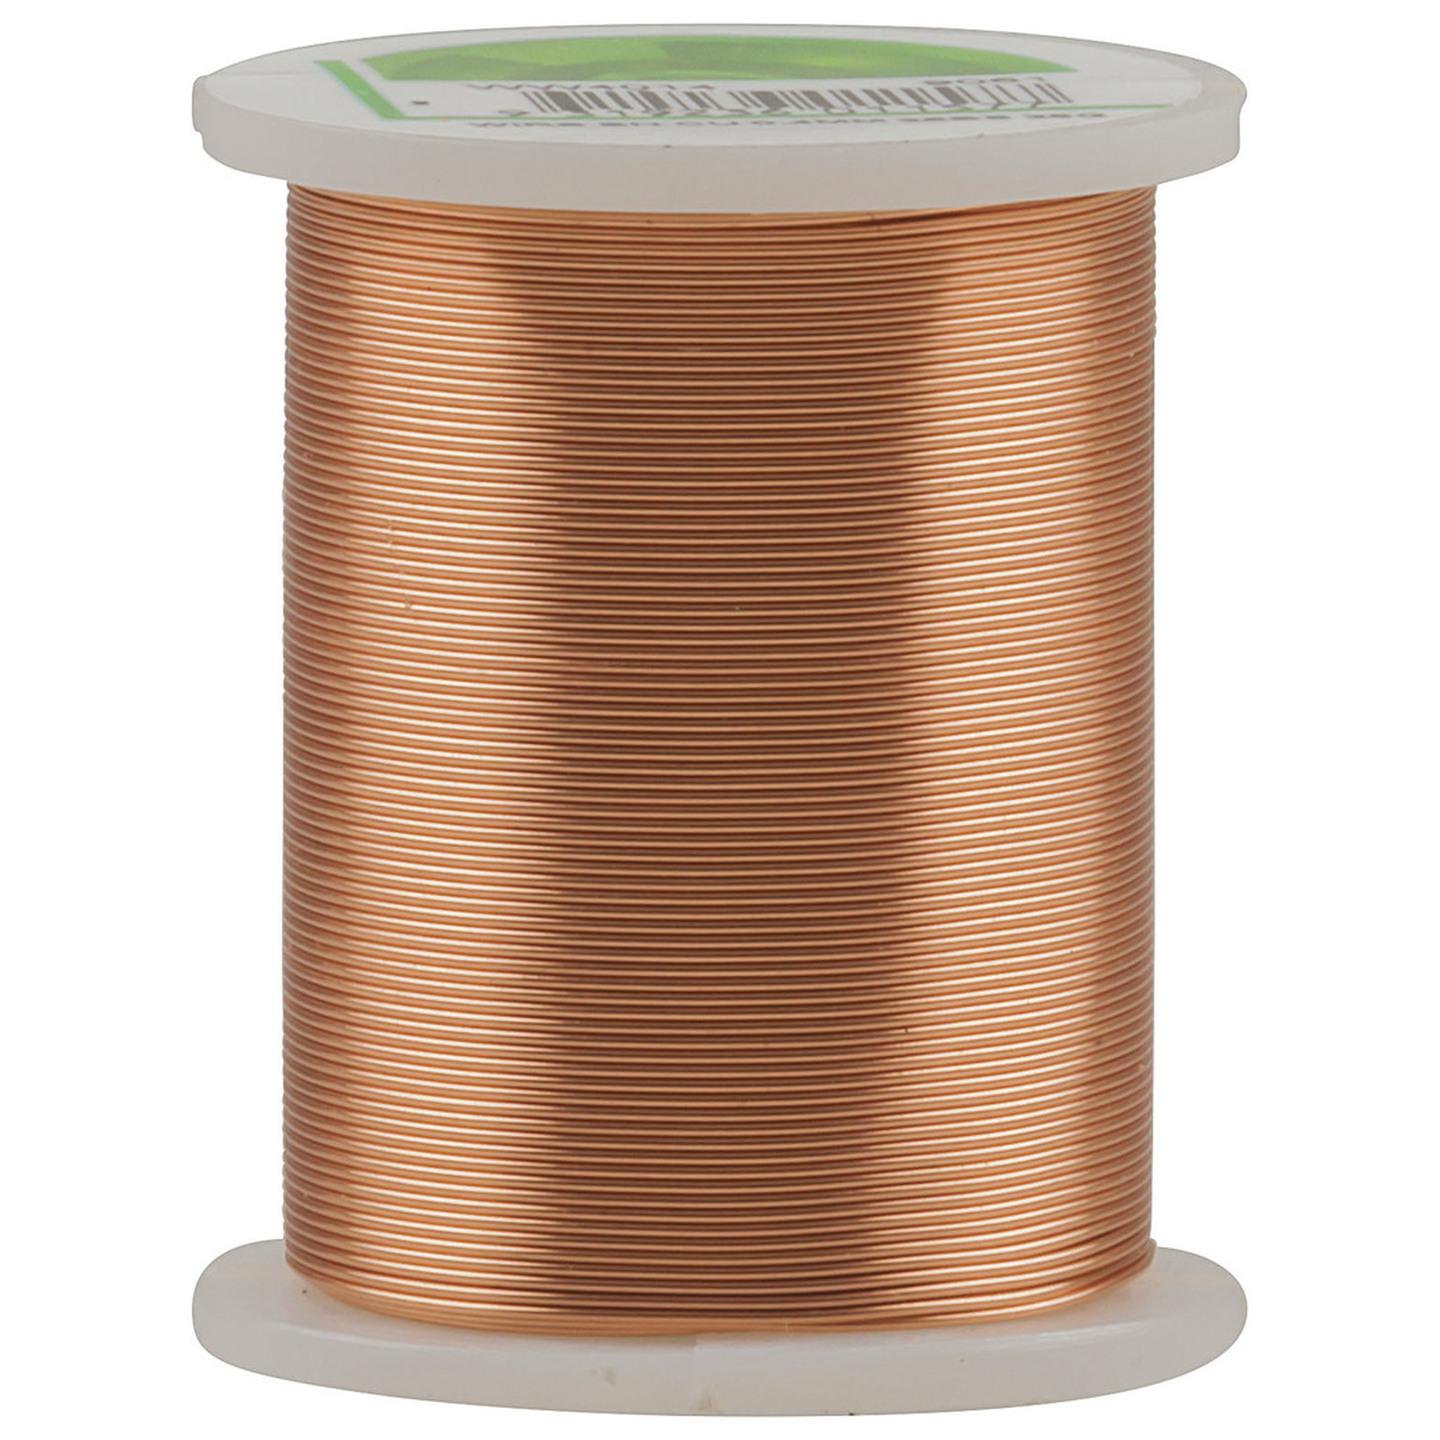 0.4mm Enamel Copper Wire Spool